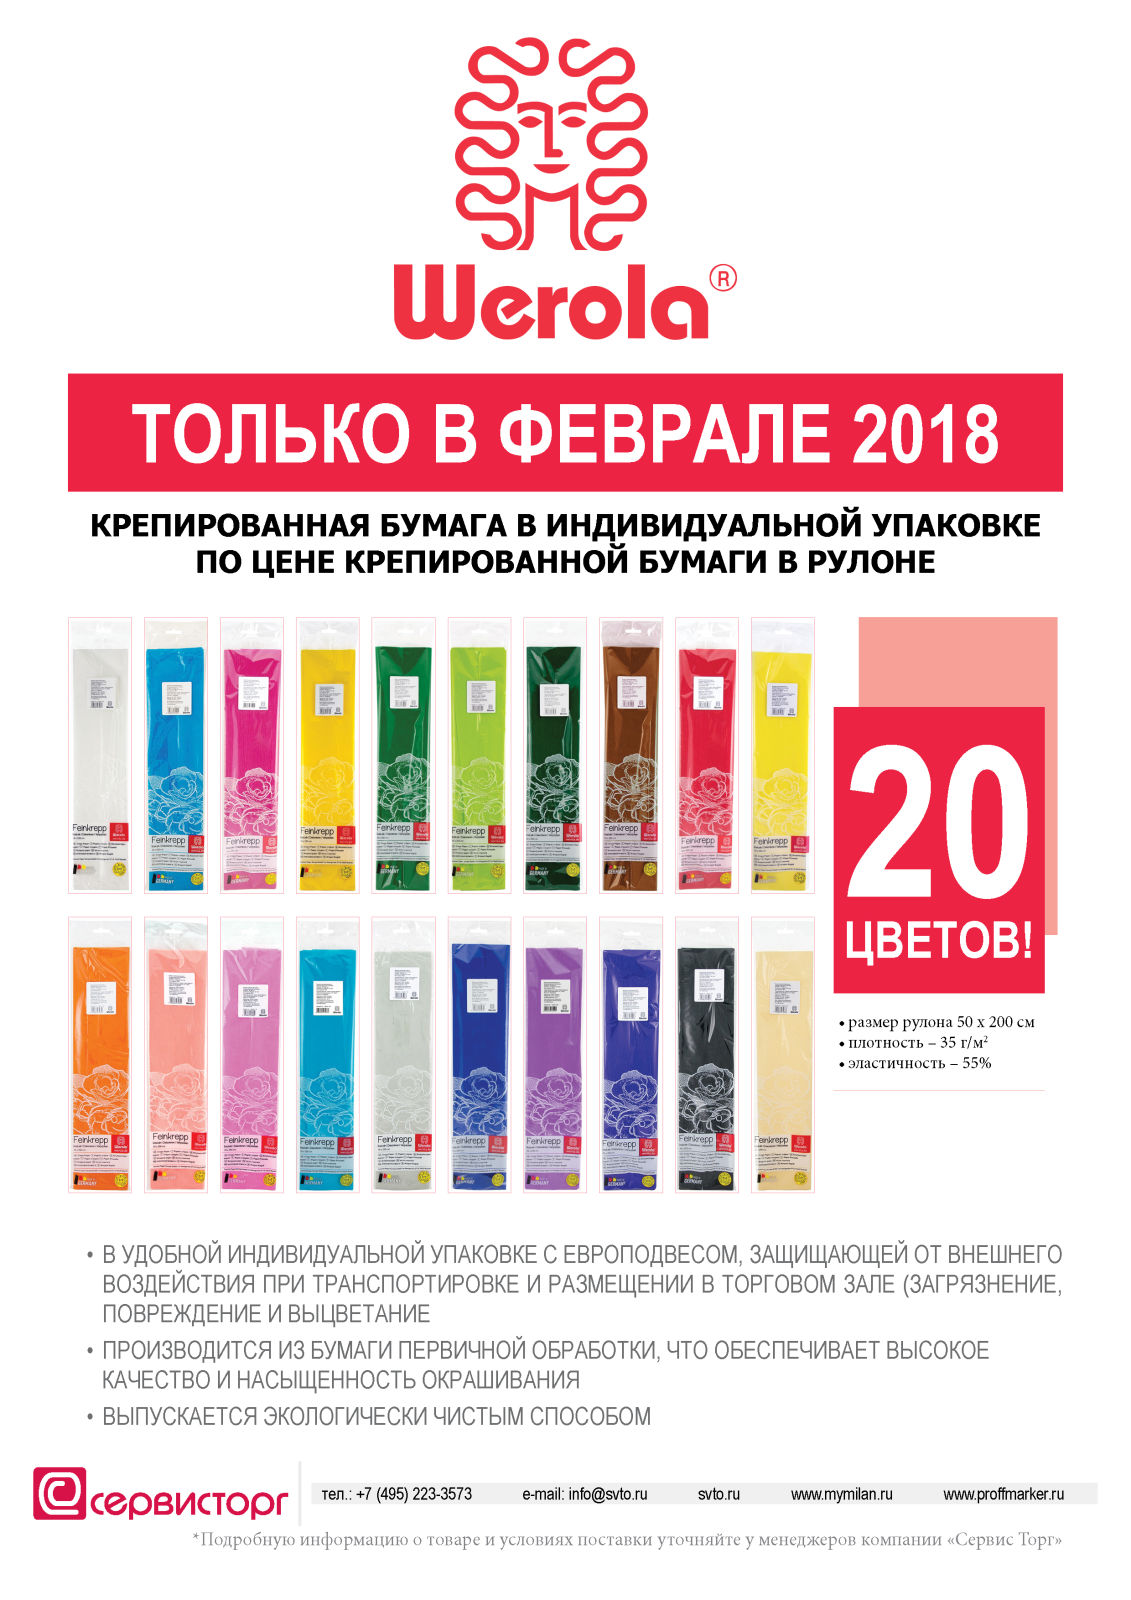    2018        TM Werola